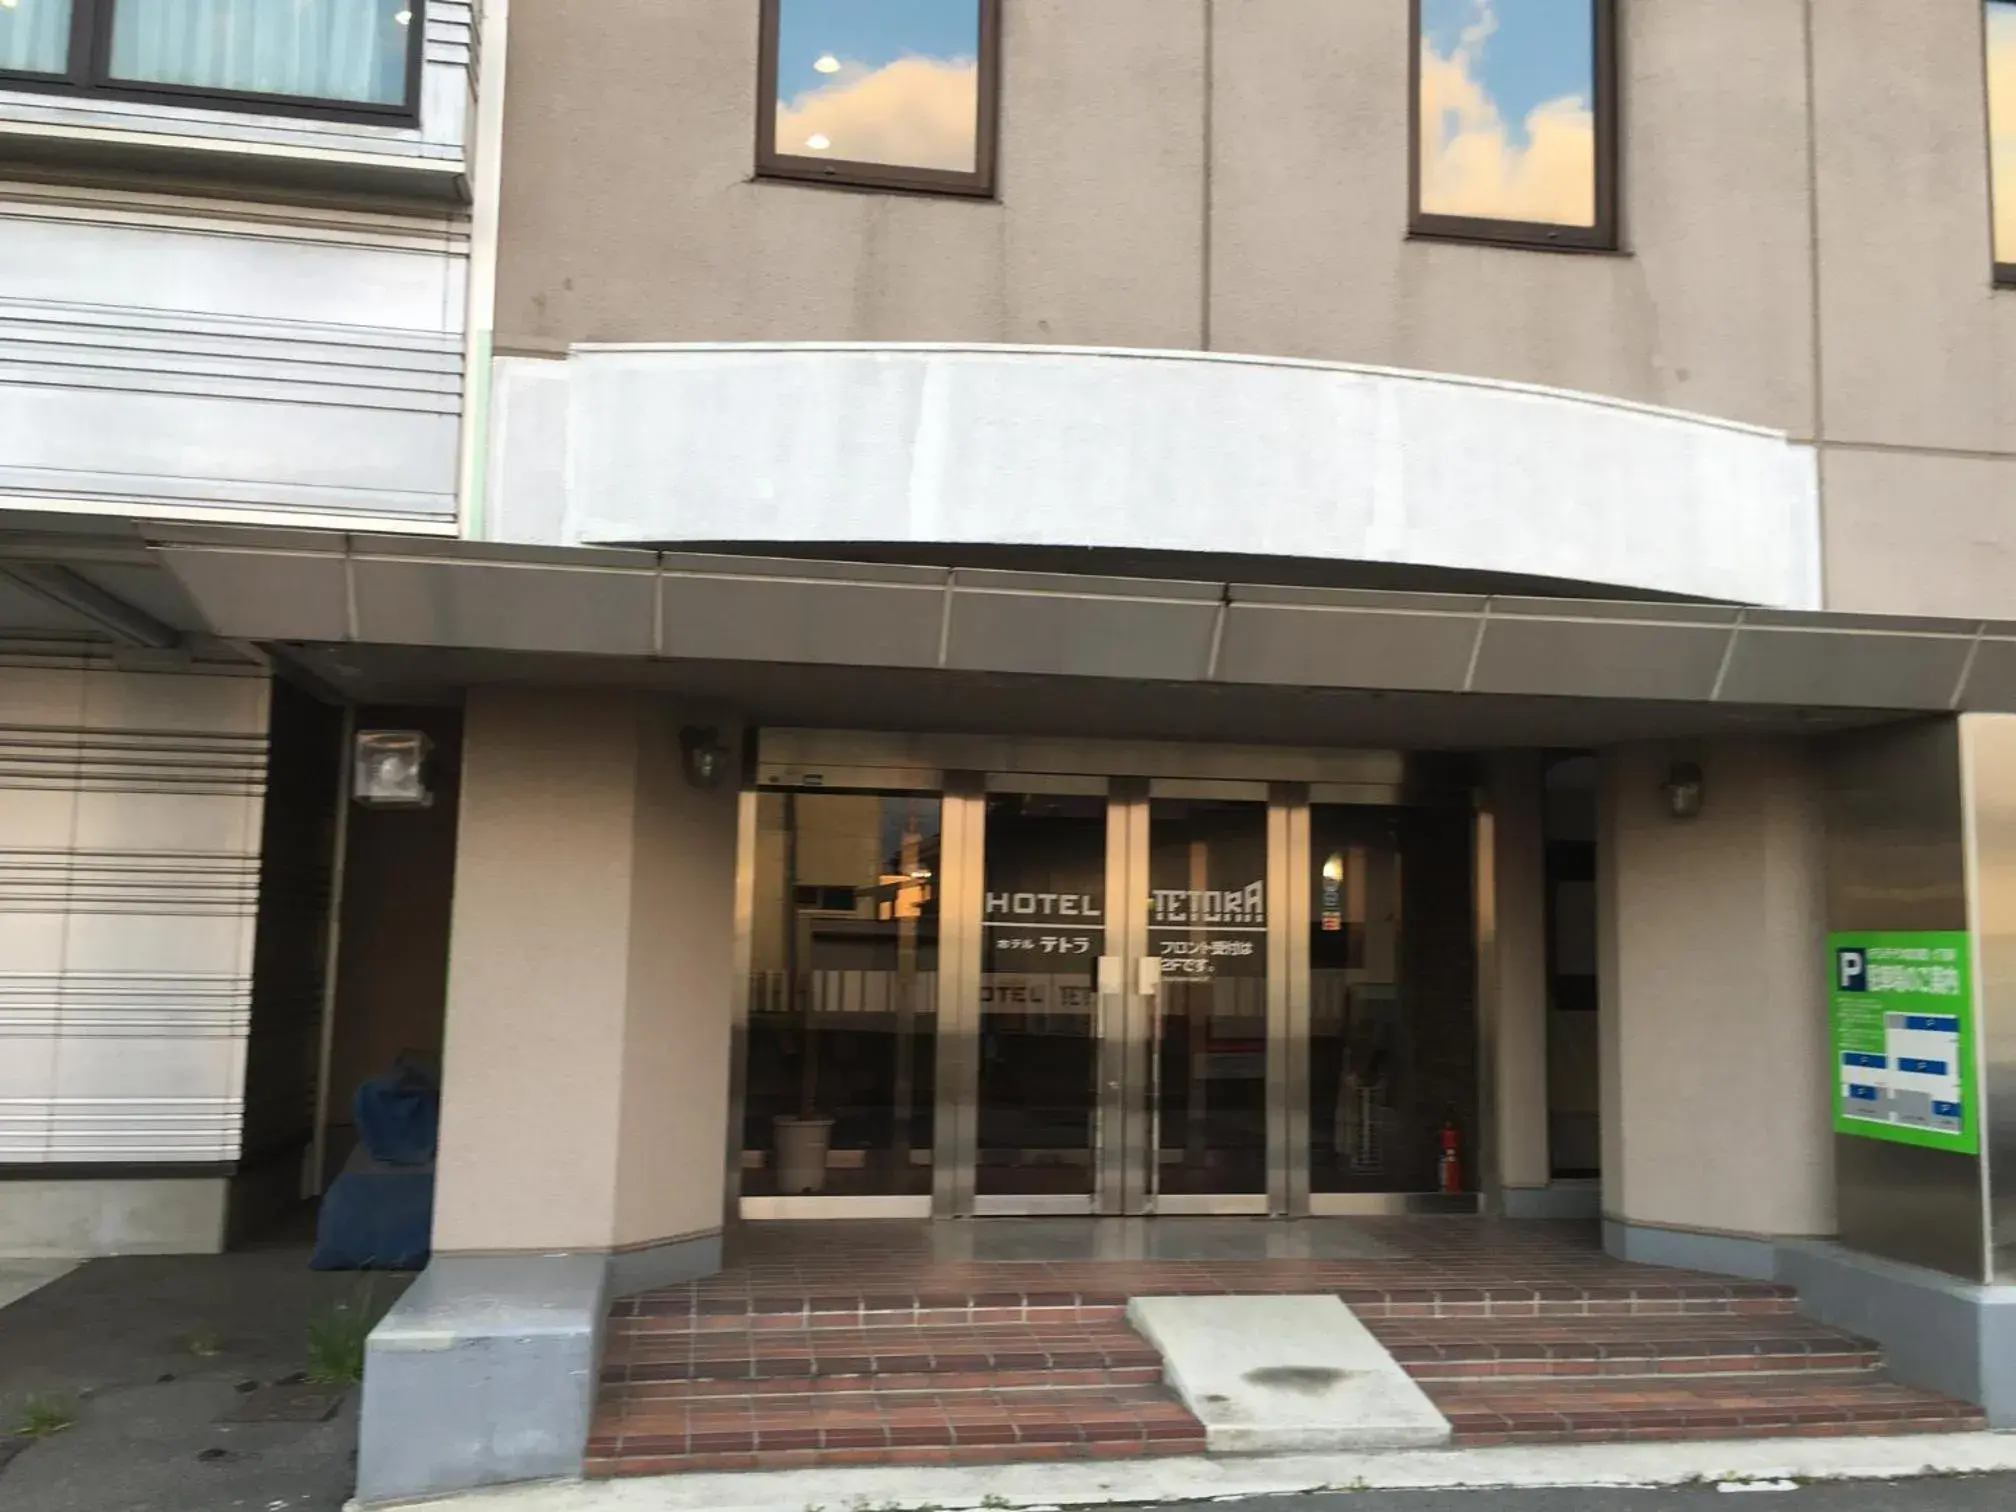 Facade/entrance in Hotel Tetora Hachinohe